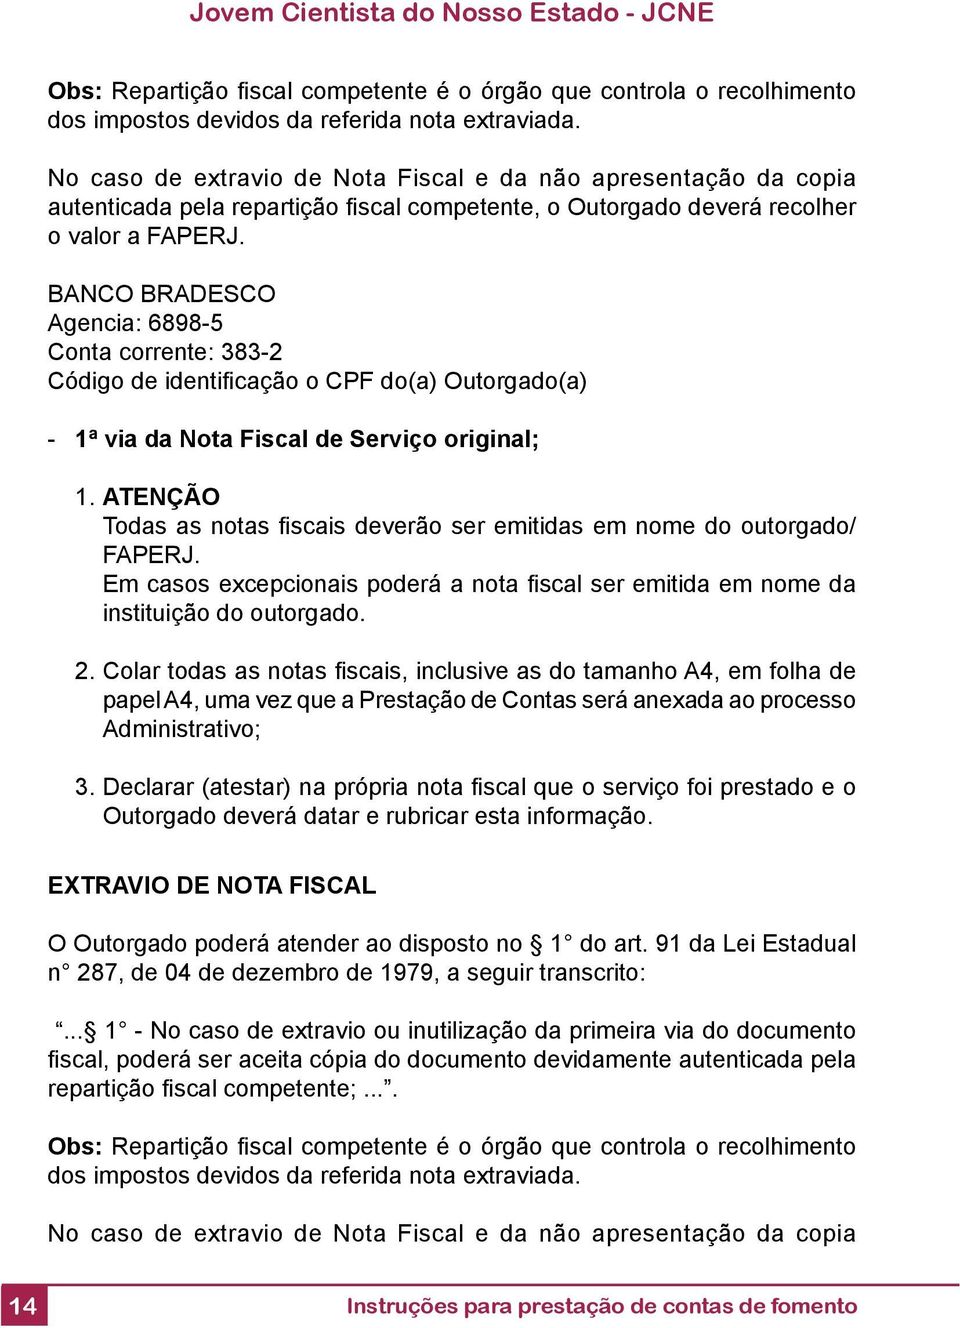 BANCO BRADESCO Agencia: 6898-5 Conta corrente: 383-2 Código de identifi cação o CPF do(a) Outorgado(a) - 1ª via da Nota Fiscal de Serviço original; 1.